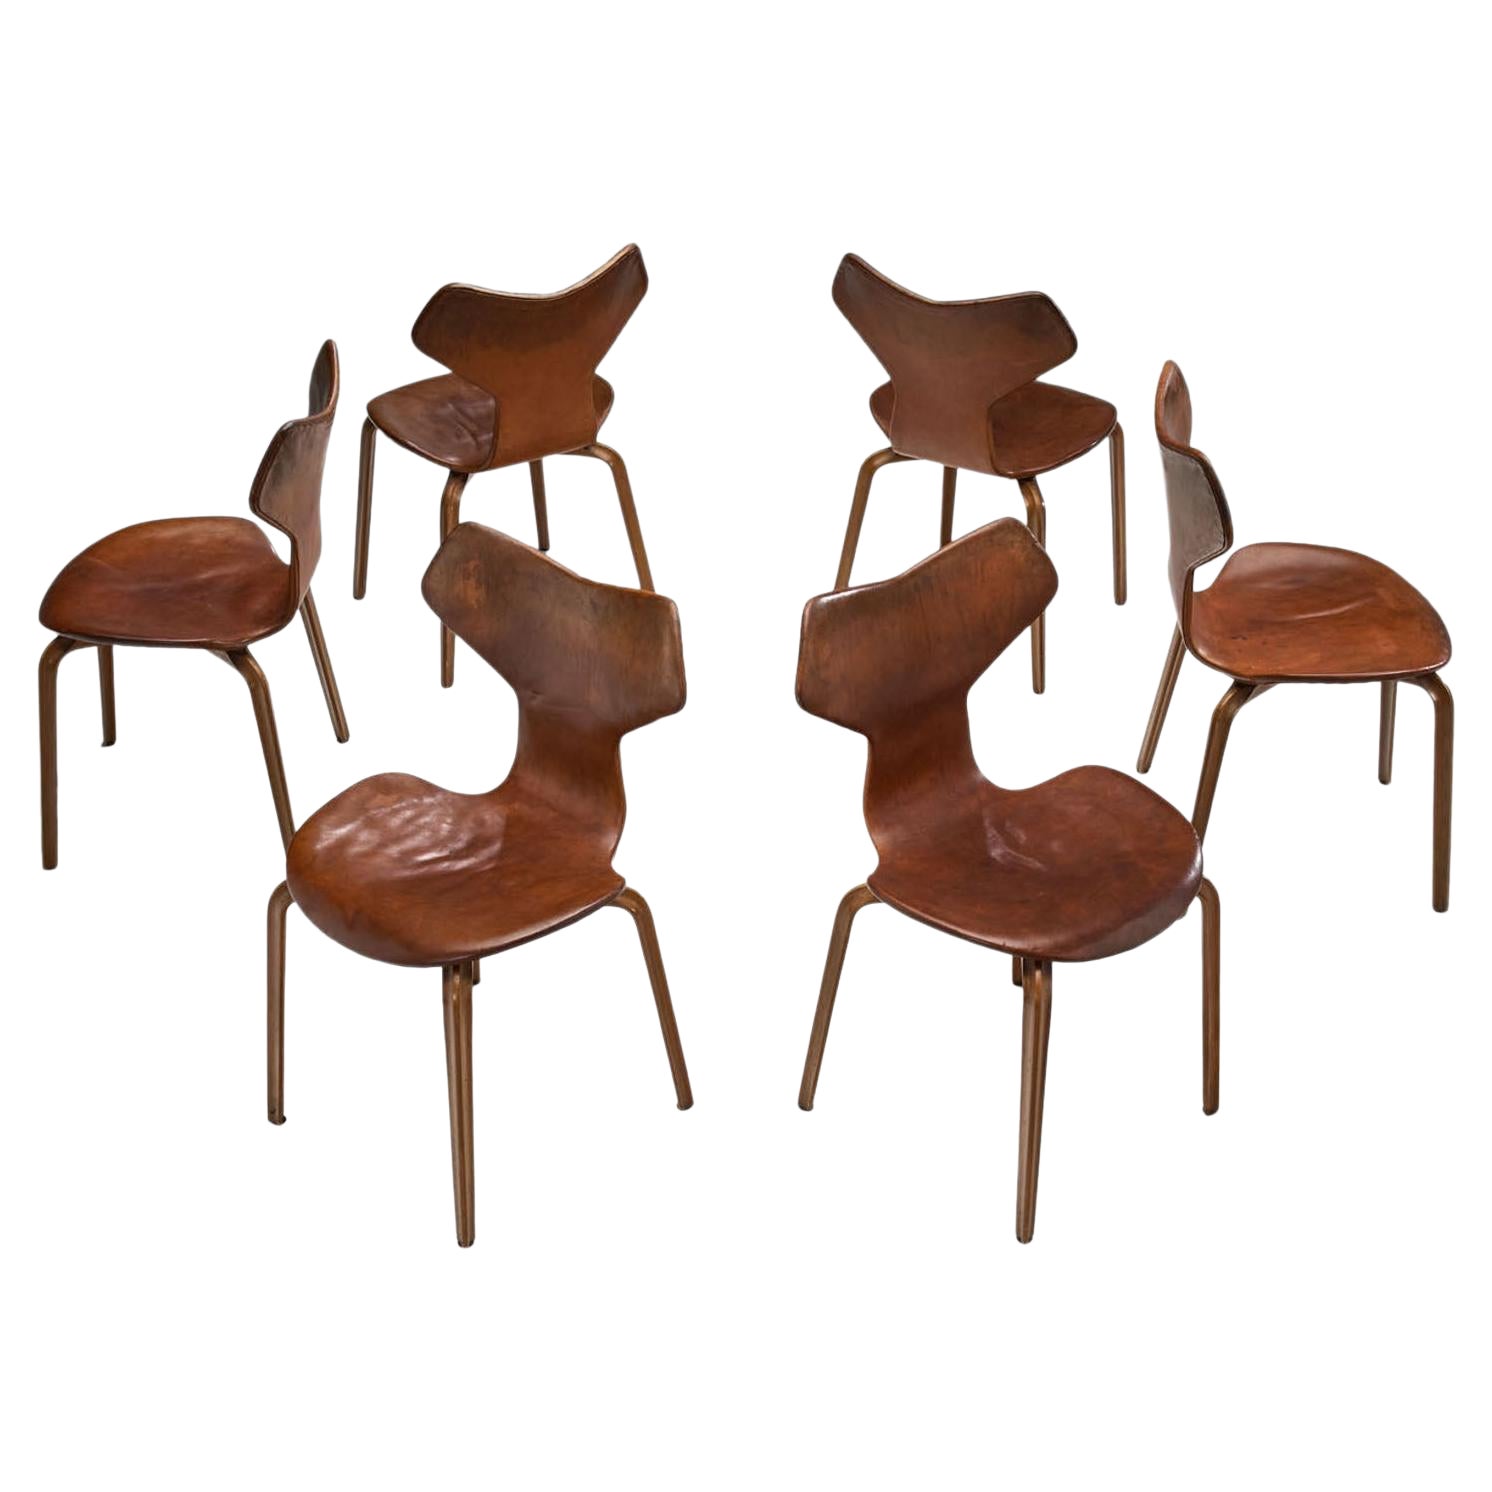 Arne Jacobsen “Grand Prix” Chairs for Fritz Hansen, Denmark 1950s For Sale